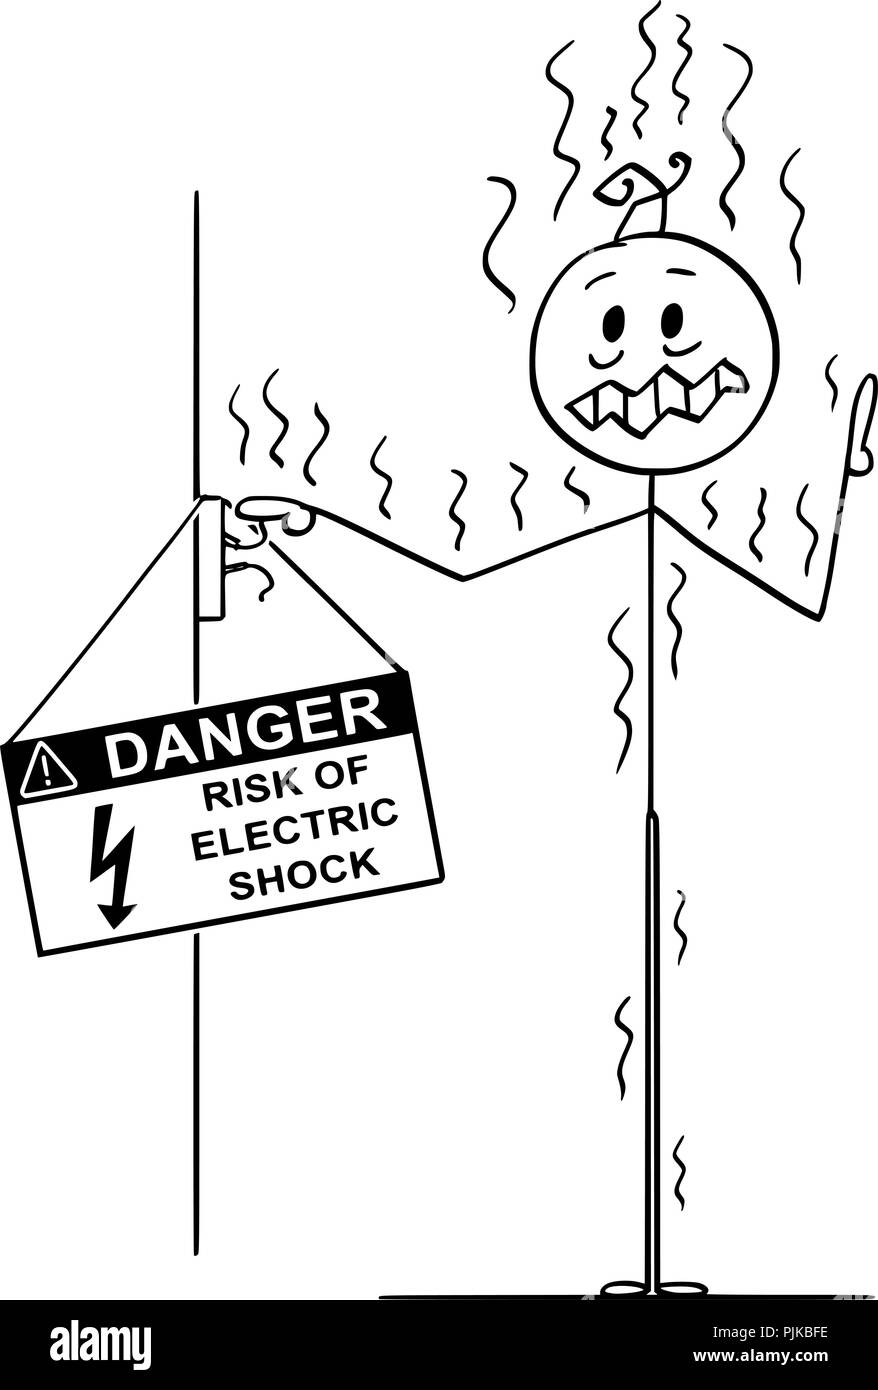 Cartoon di uomo toccando conduttori non isolati e ha ottenuto la potenza elettrica Shock Illustrazione Vettoriale